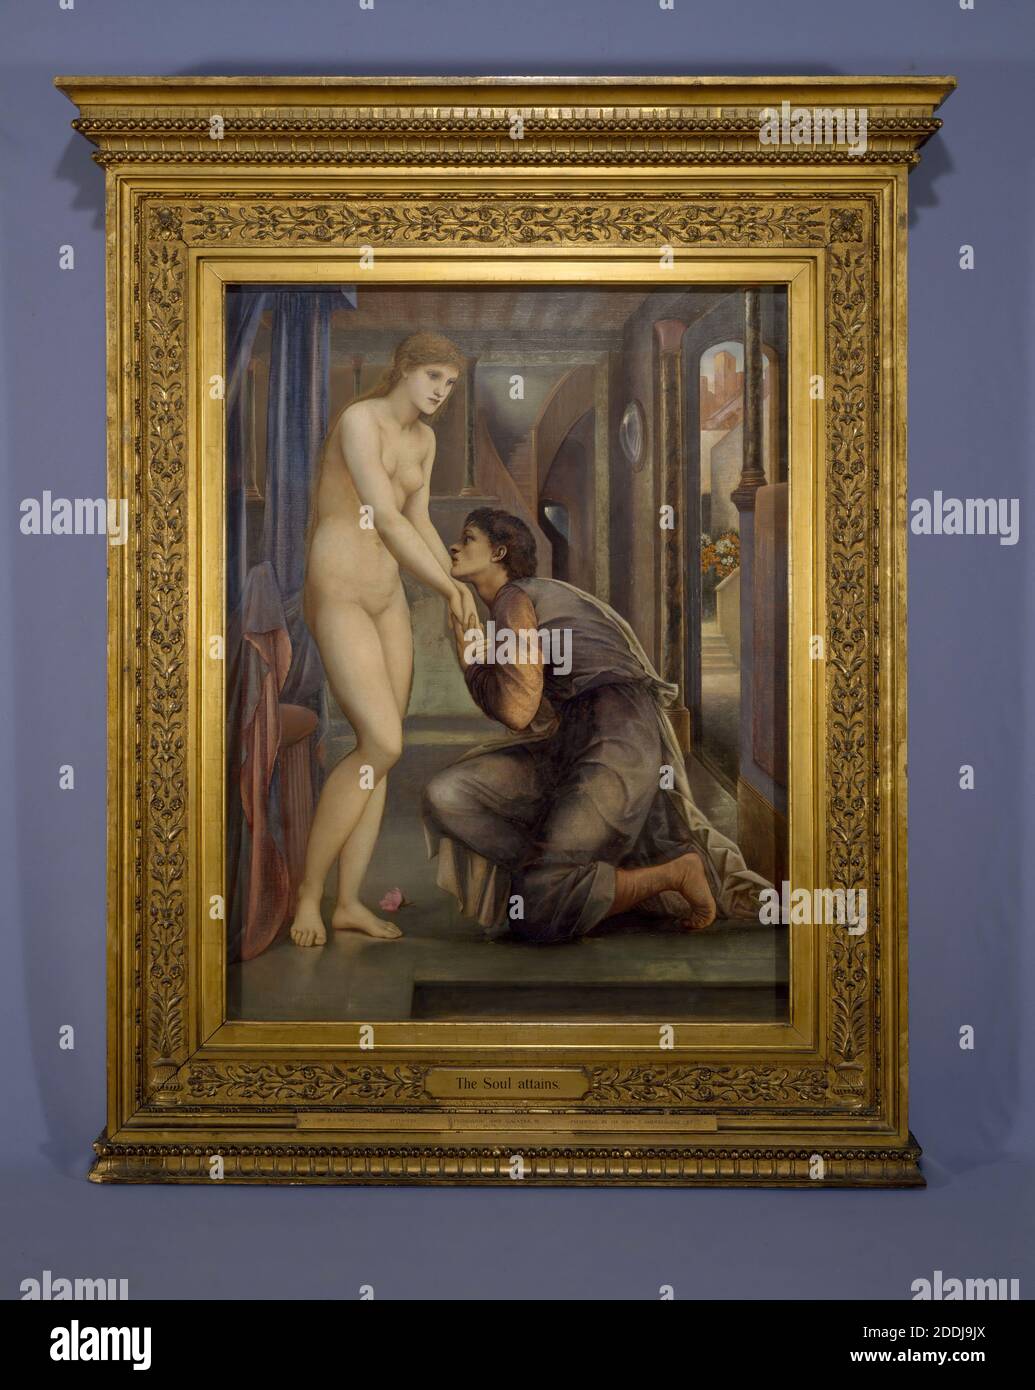 Pygmalion und das Bild, die Seele erreicht, 1878 vier in einer Serie von vier Gemälden Künstler: Edward Burne-Jones Öl auf Leinwand, Kunstbewegung, Pre-Raphaelite, 19. Jahrhundert Stockfoto